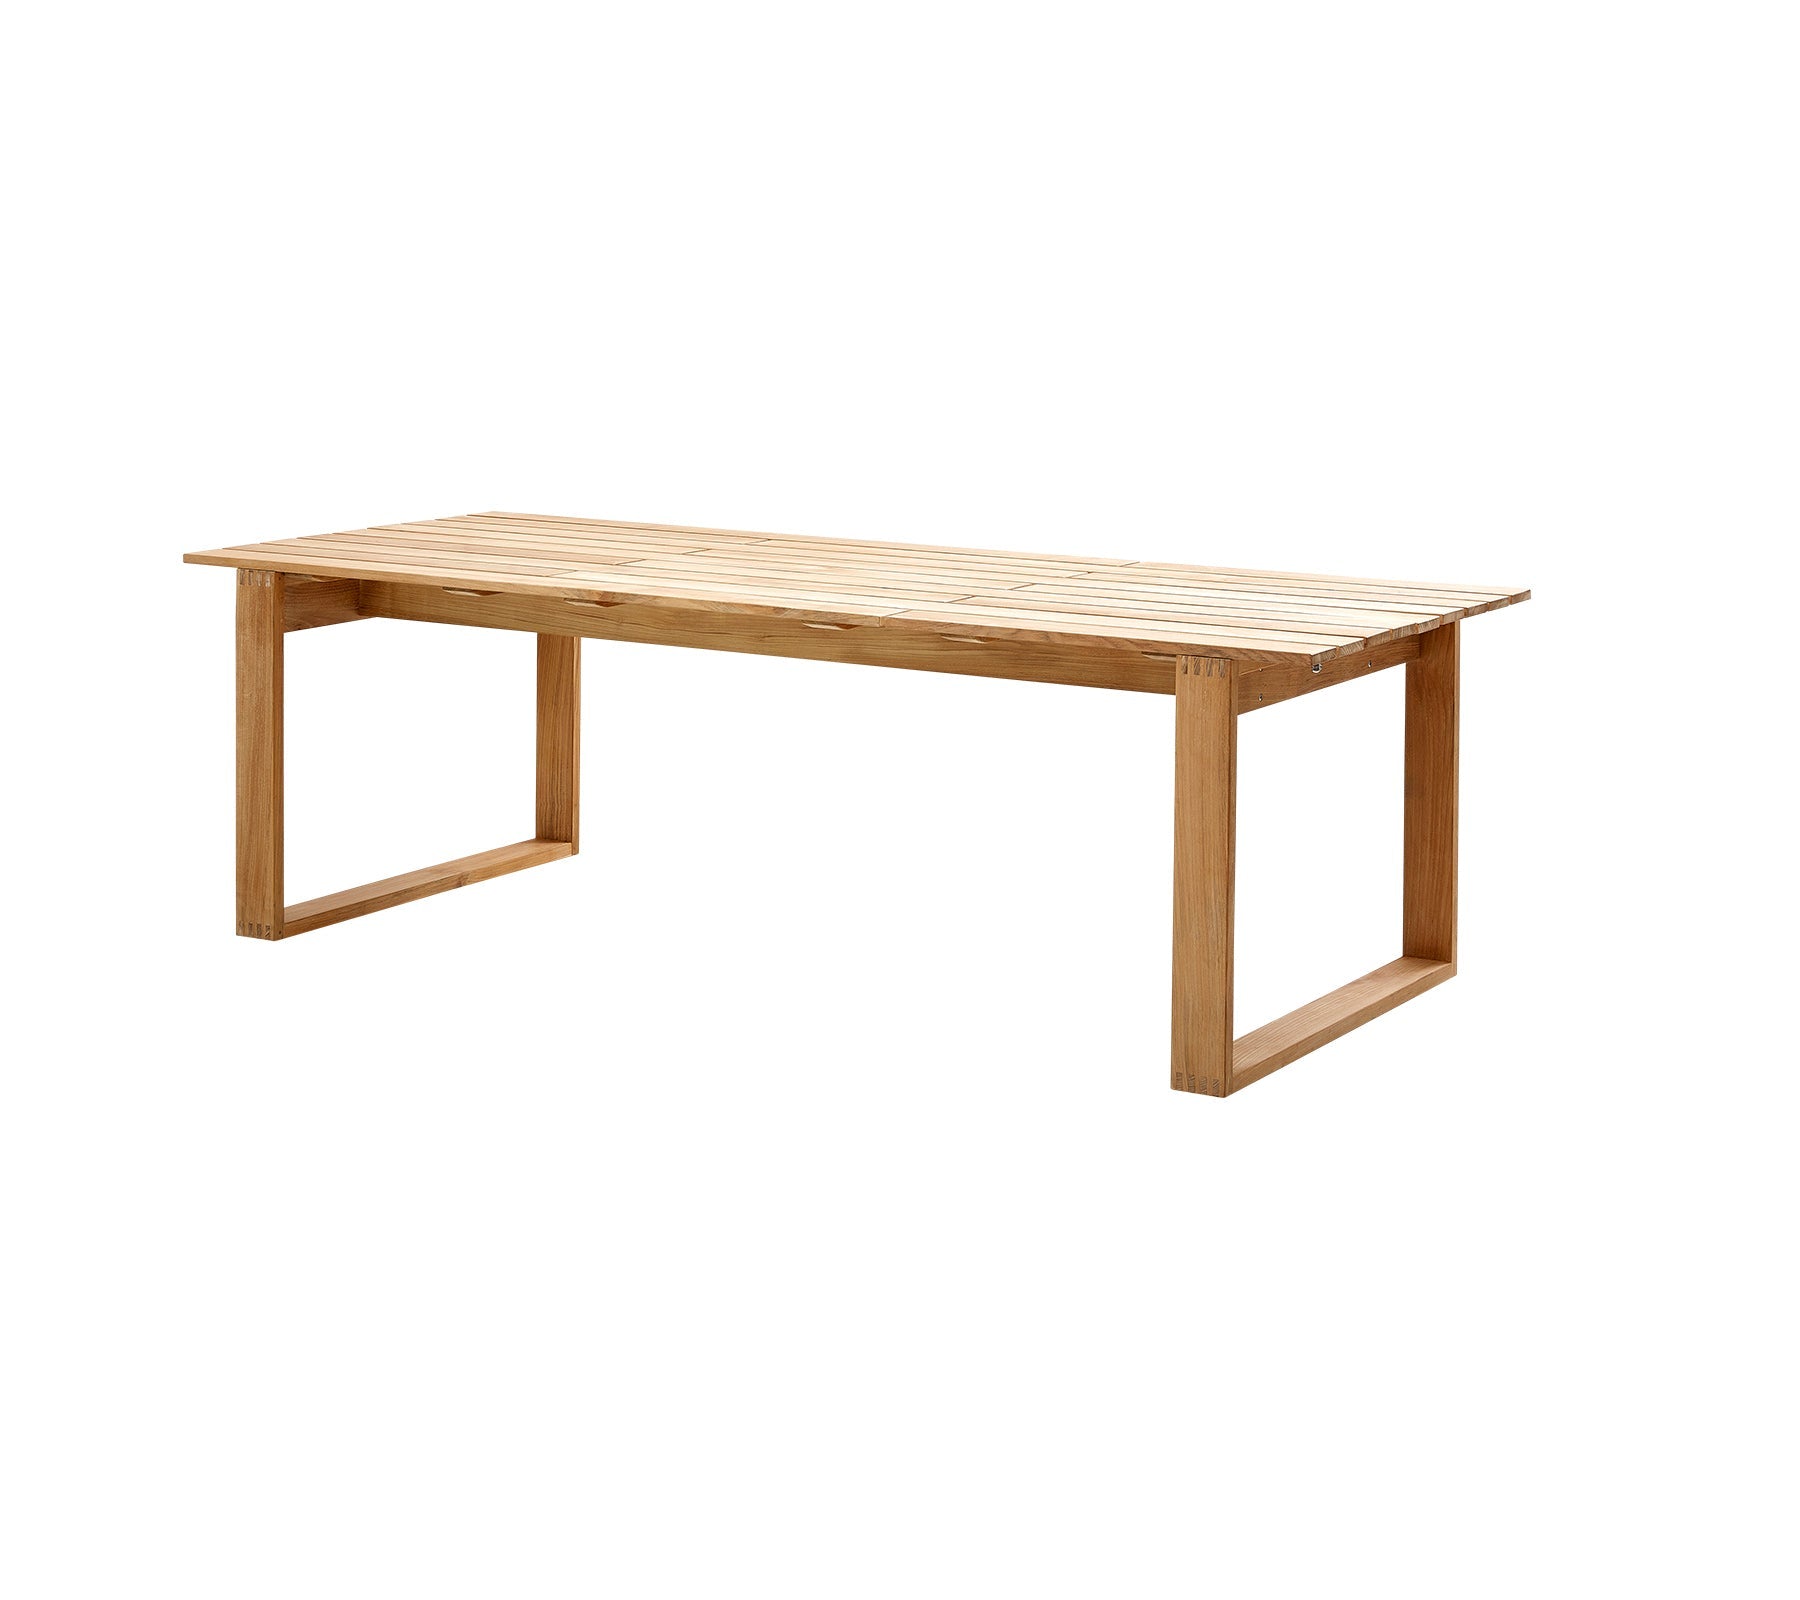 Cane-line Endless Table, 100X240 Cm 5074T